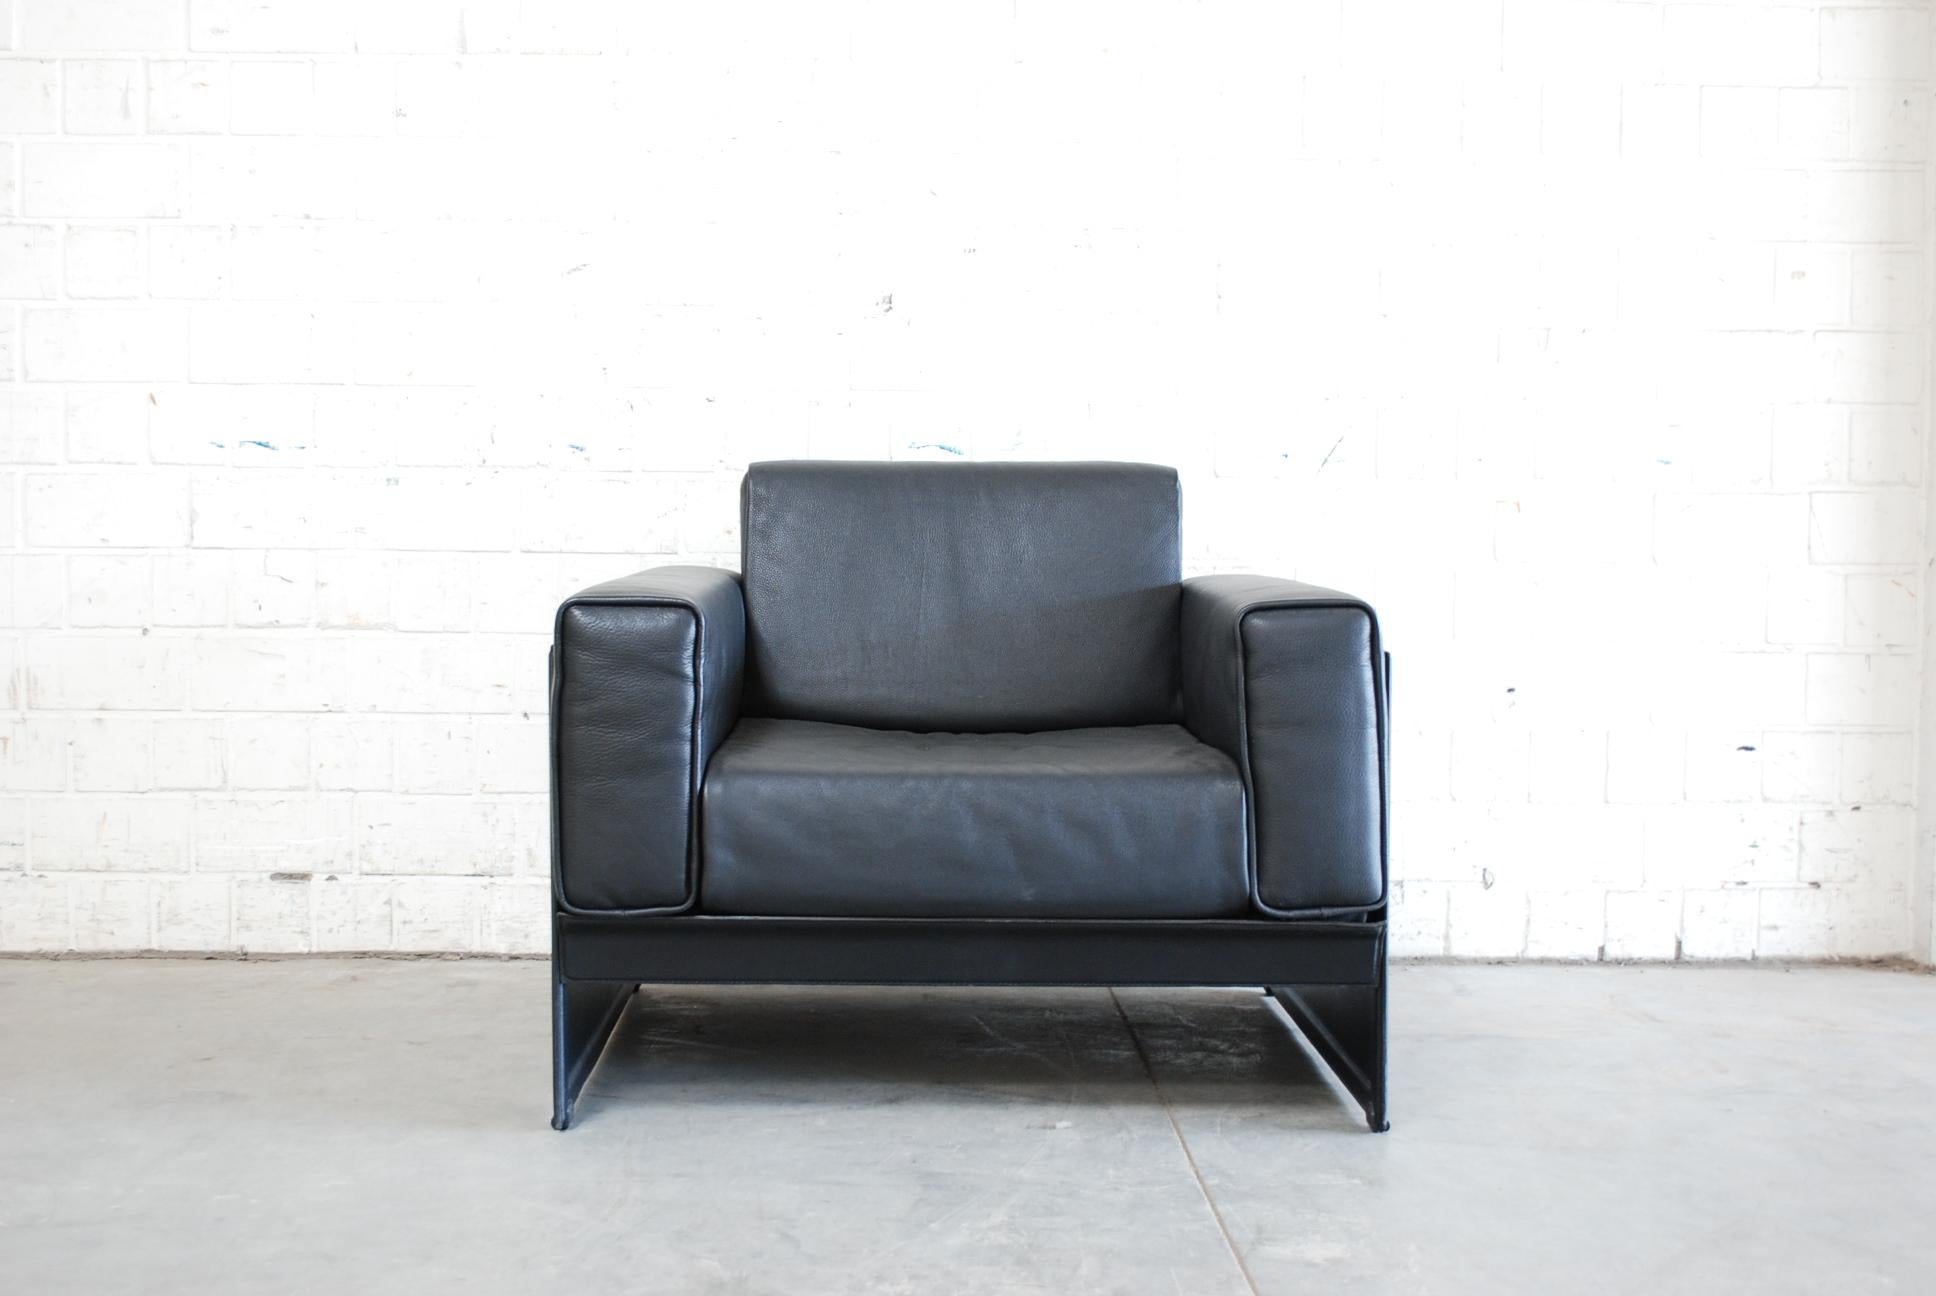 Ce fauteuil en cuir Korium KM 3/1 a été conçu par Tito Agnoli pour Matteo Grassi.
Il est recouvert d'un épais cuir noir.
Le cadre est fabriqué en cuir de selle.
Un grand design italien.

 